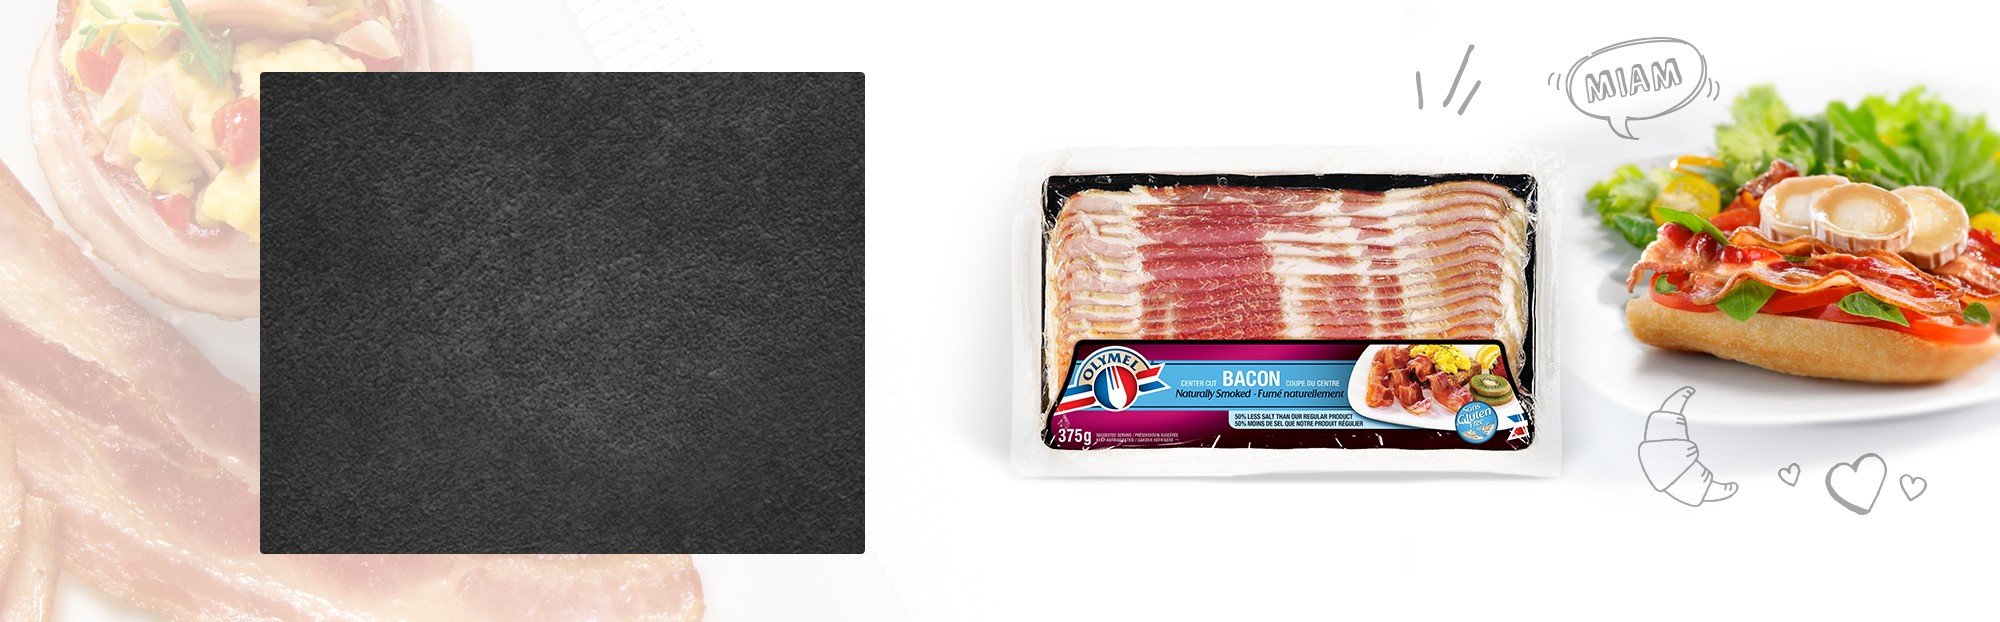 Bacon fumé naturellement 33% moins de sel